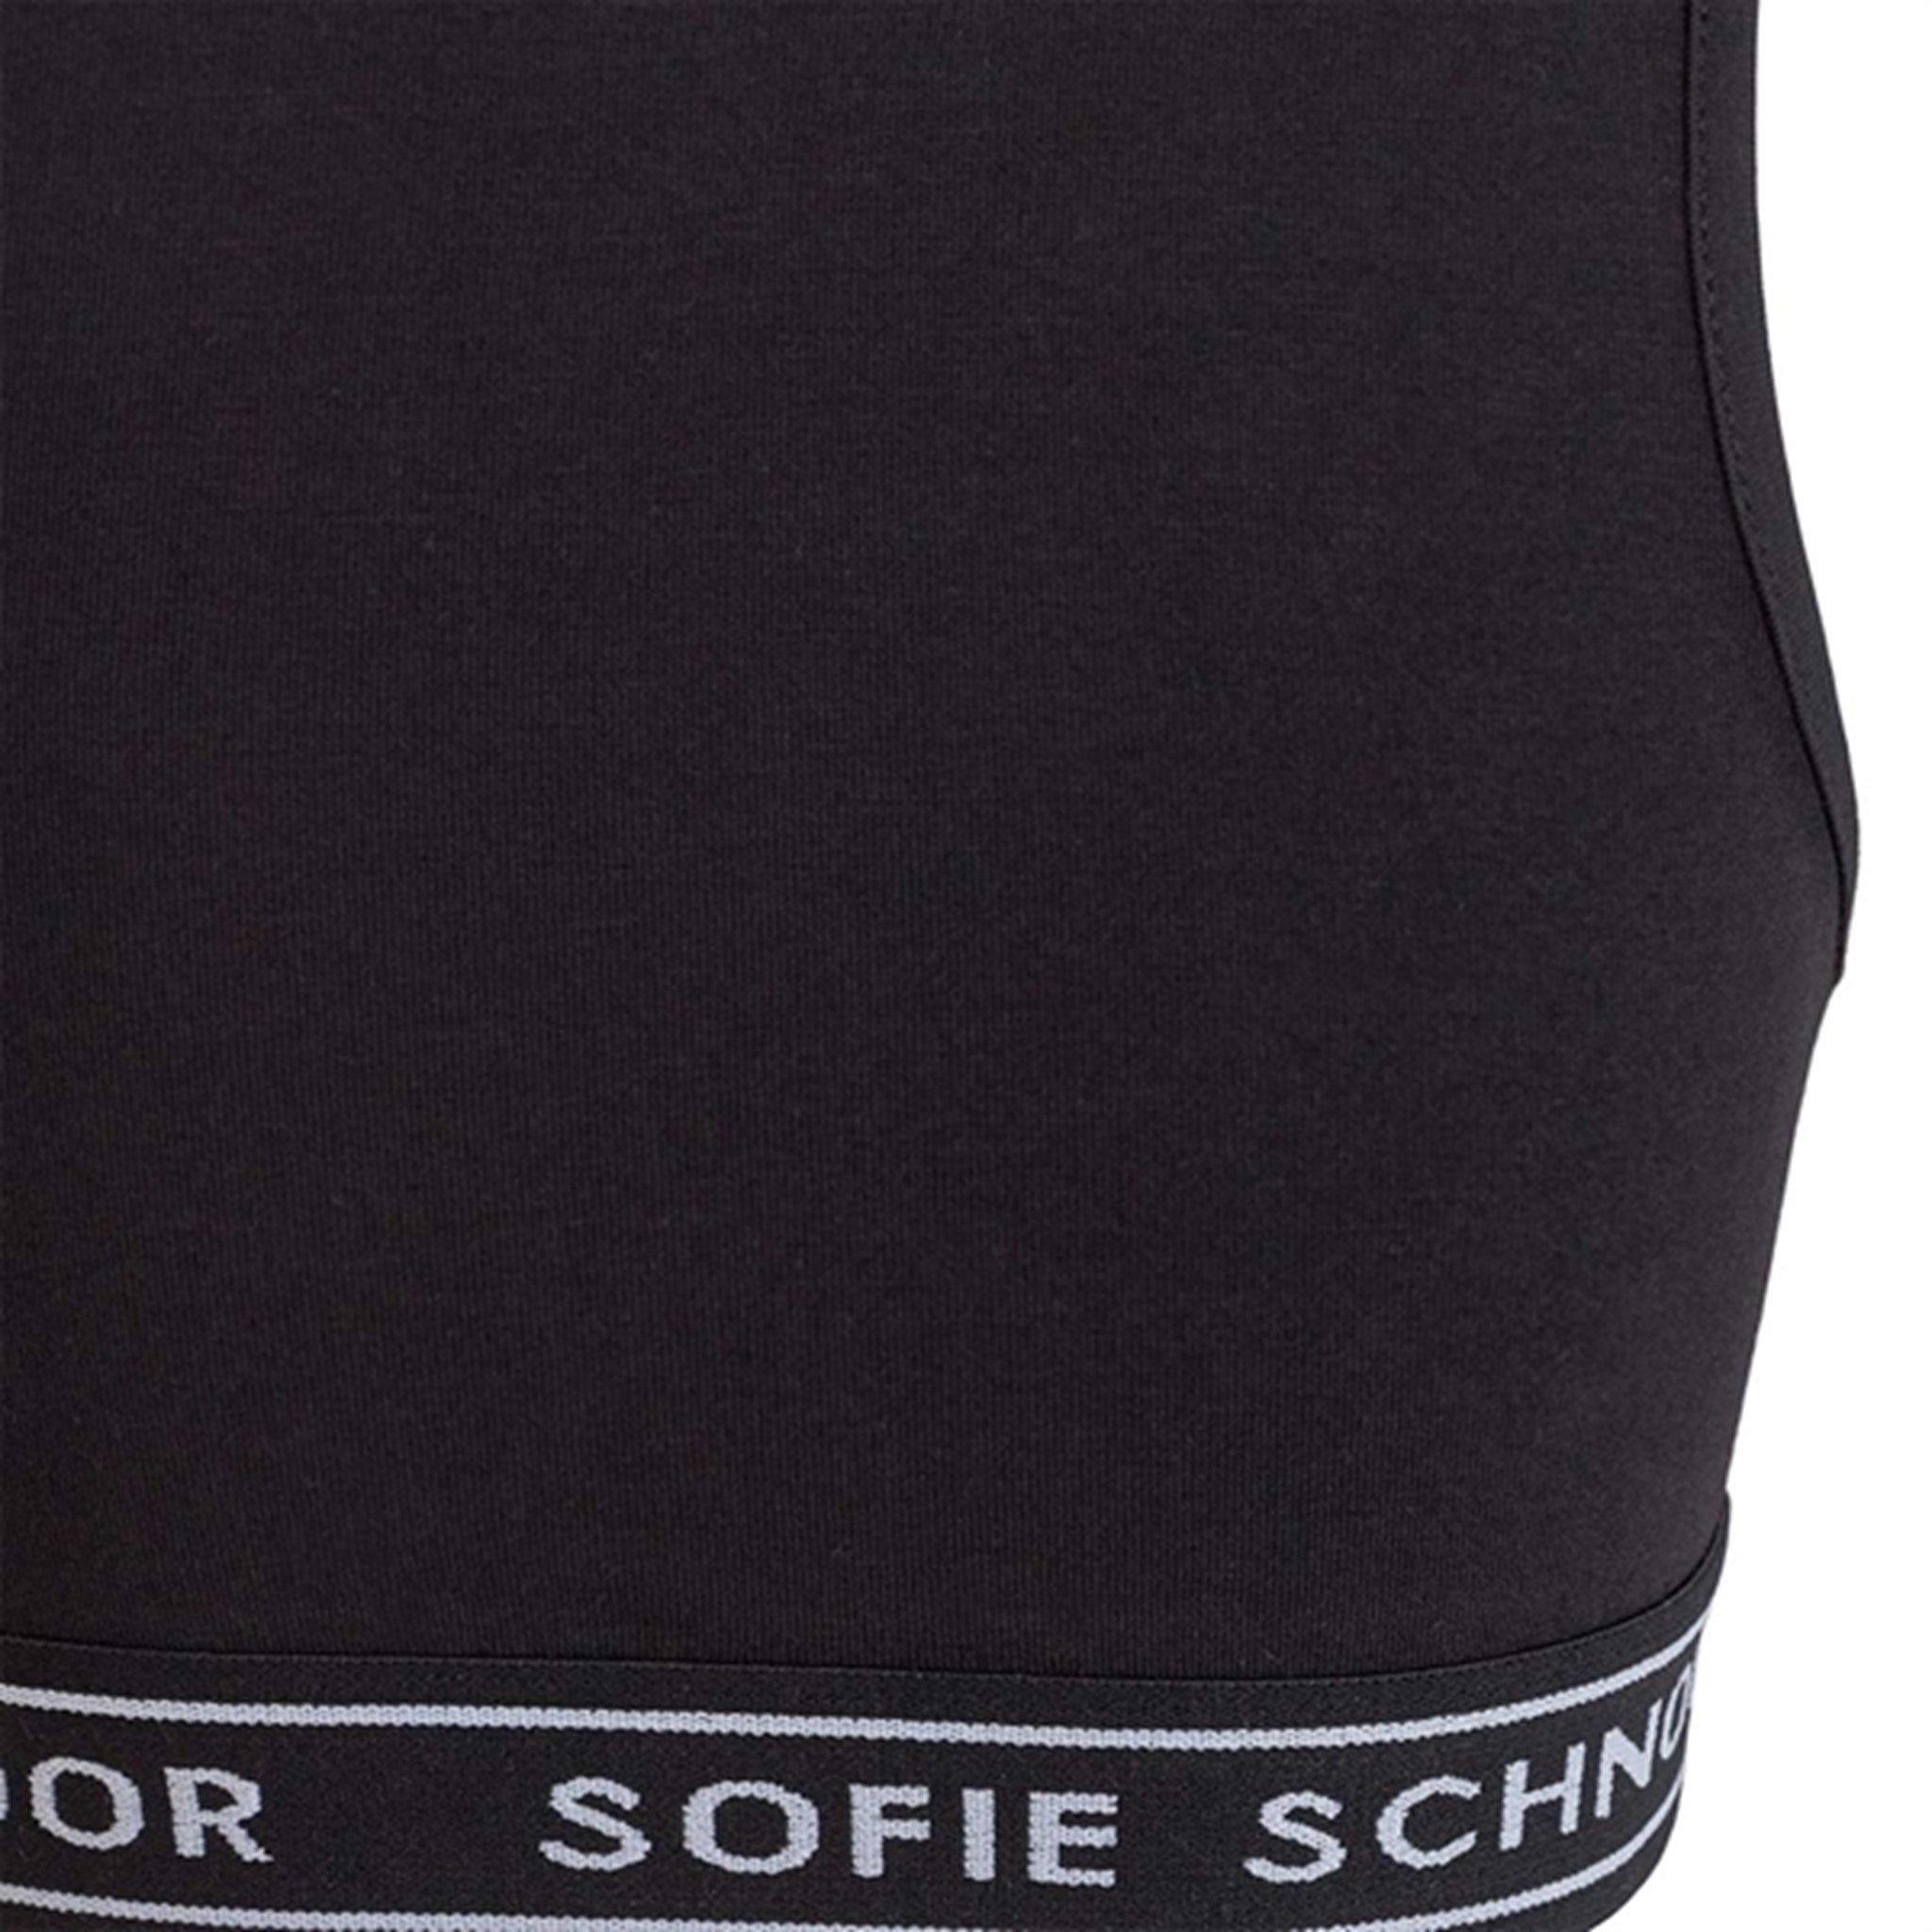 Sofie Schnoor Black Noos Underkläder 3